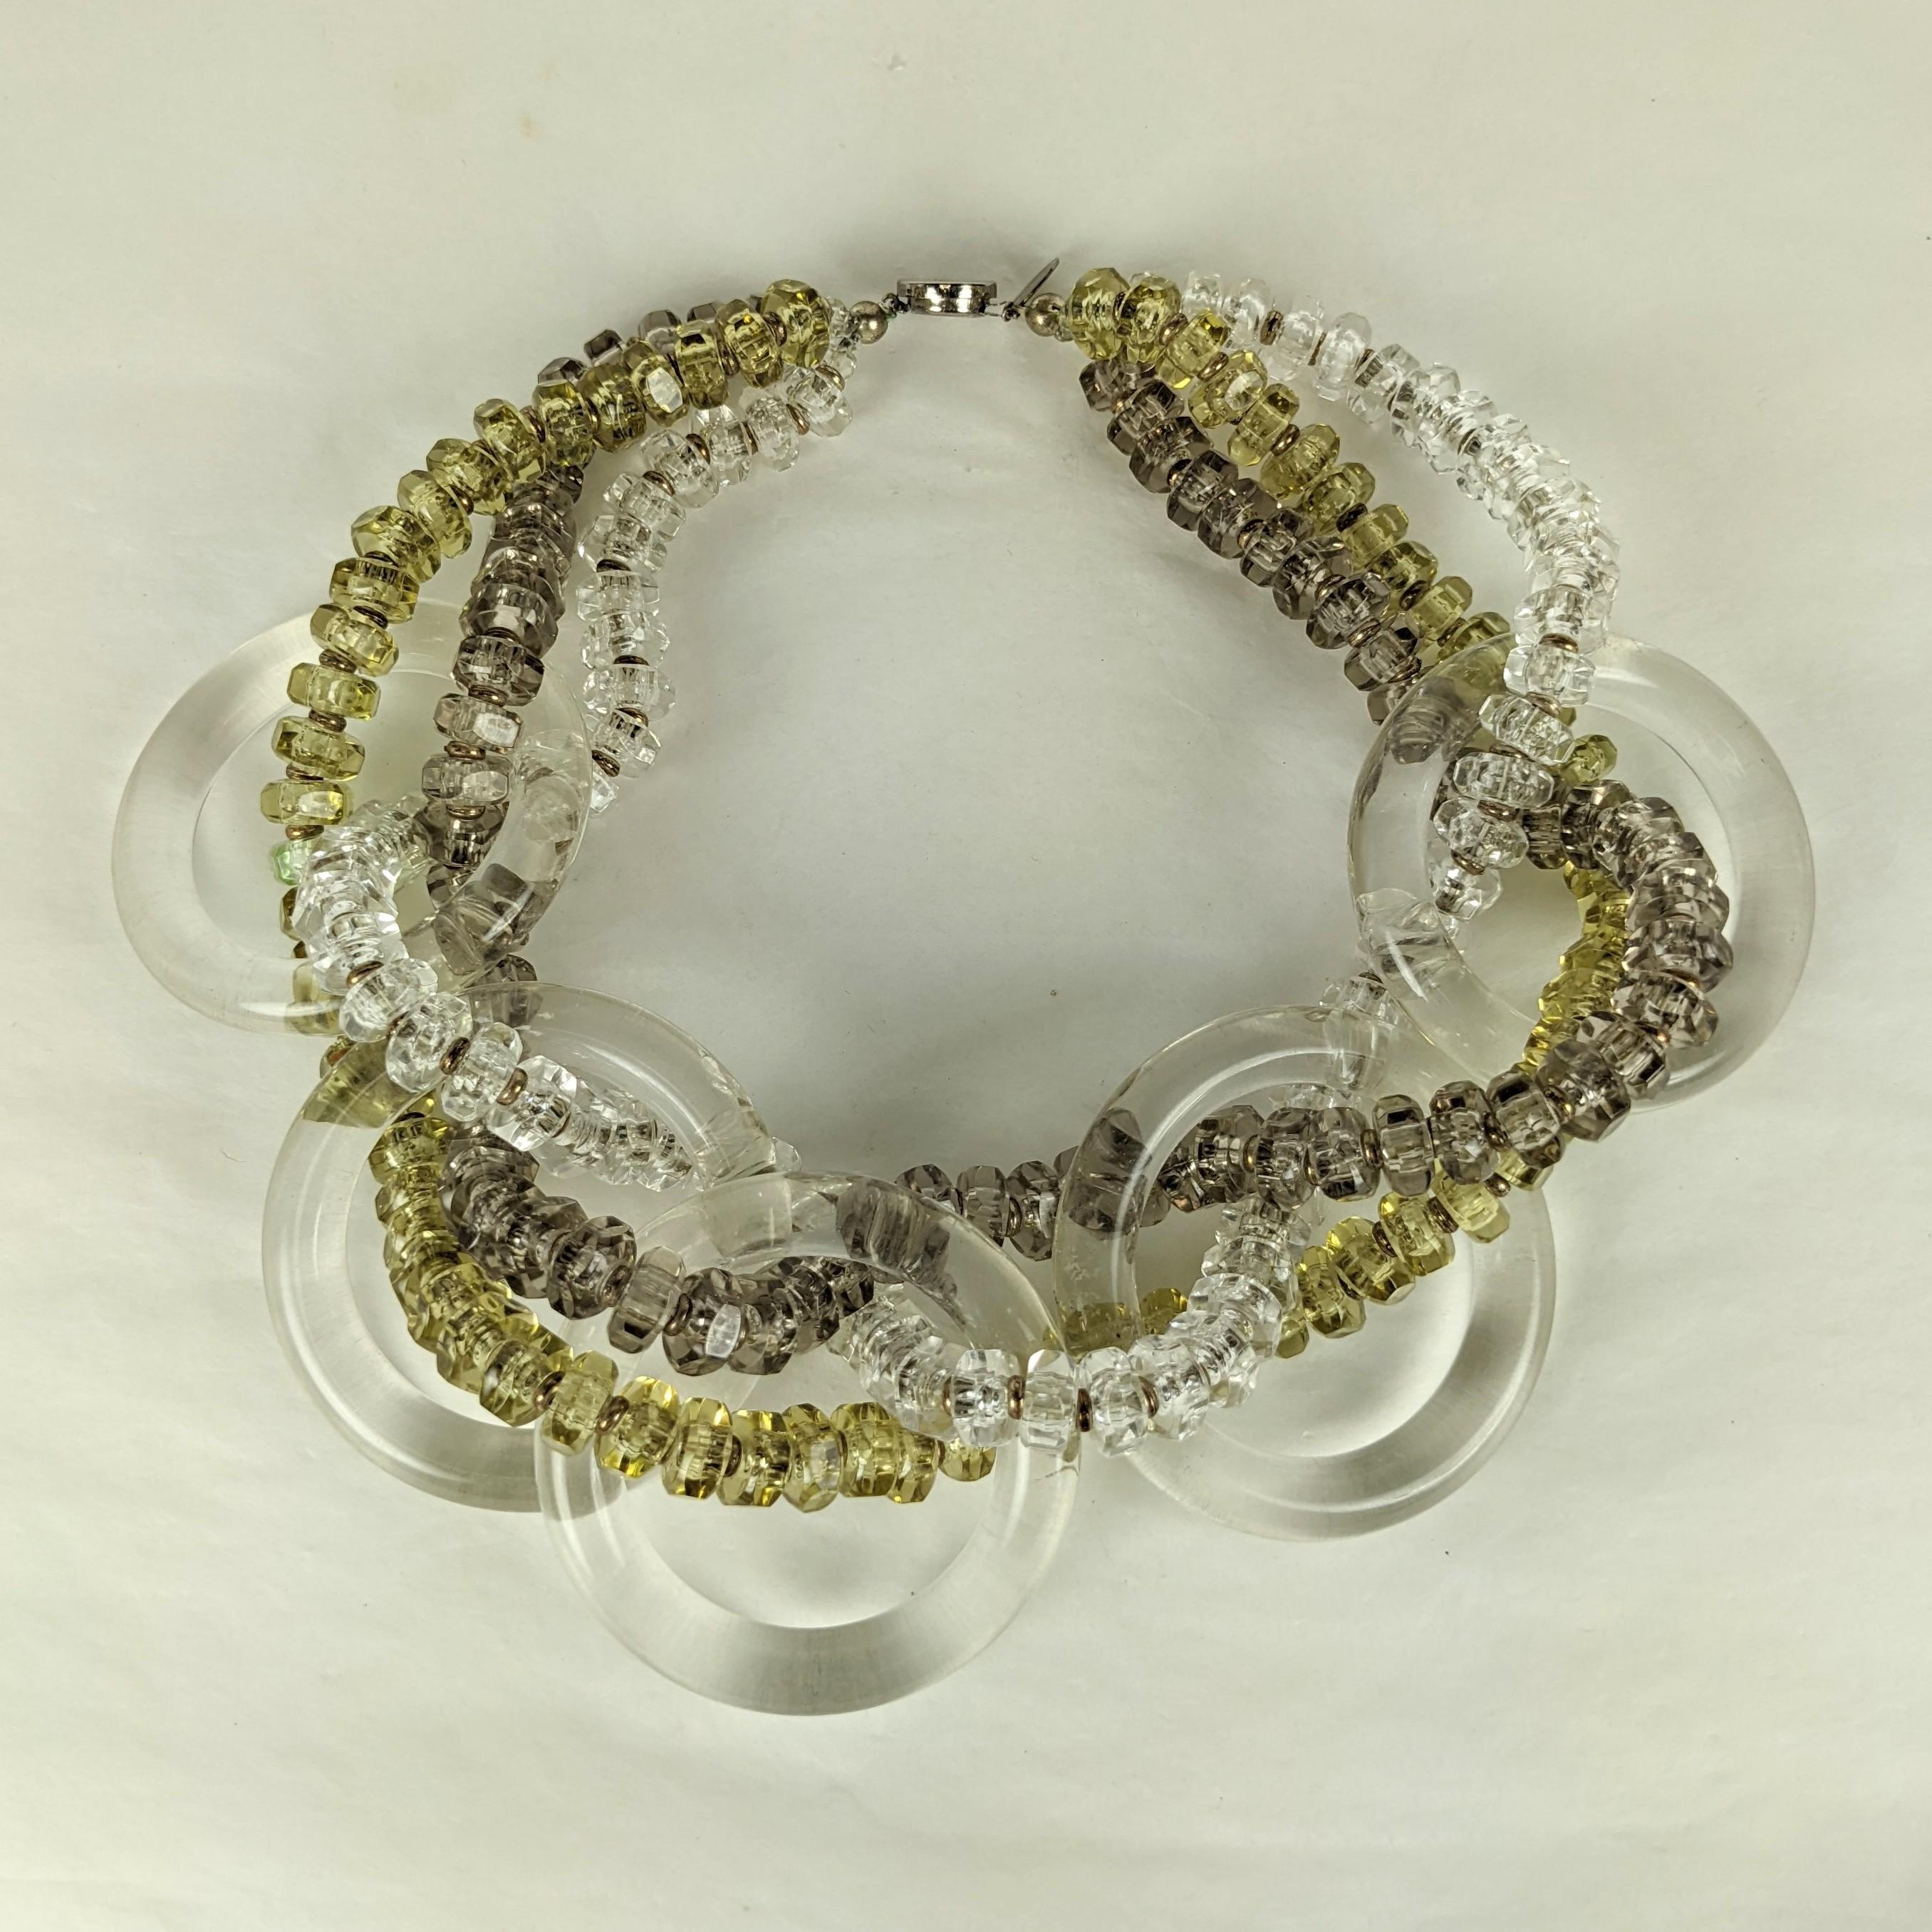 Amusant collier à cerceaux en lucite Miriam Haskell des années 1960, tressé avec des perles de cristal, d'olivine pâle et de lucite de couleur fumée pâle, avec des entretoises en métal doré. Une échelle et un design imposants. Signé Miriam Haskell.